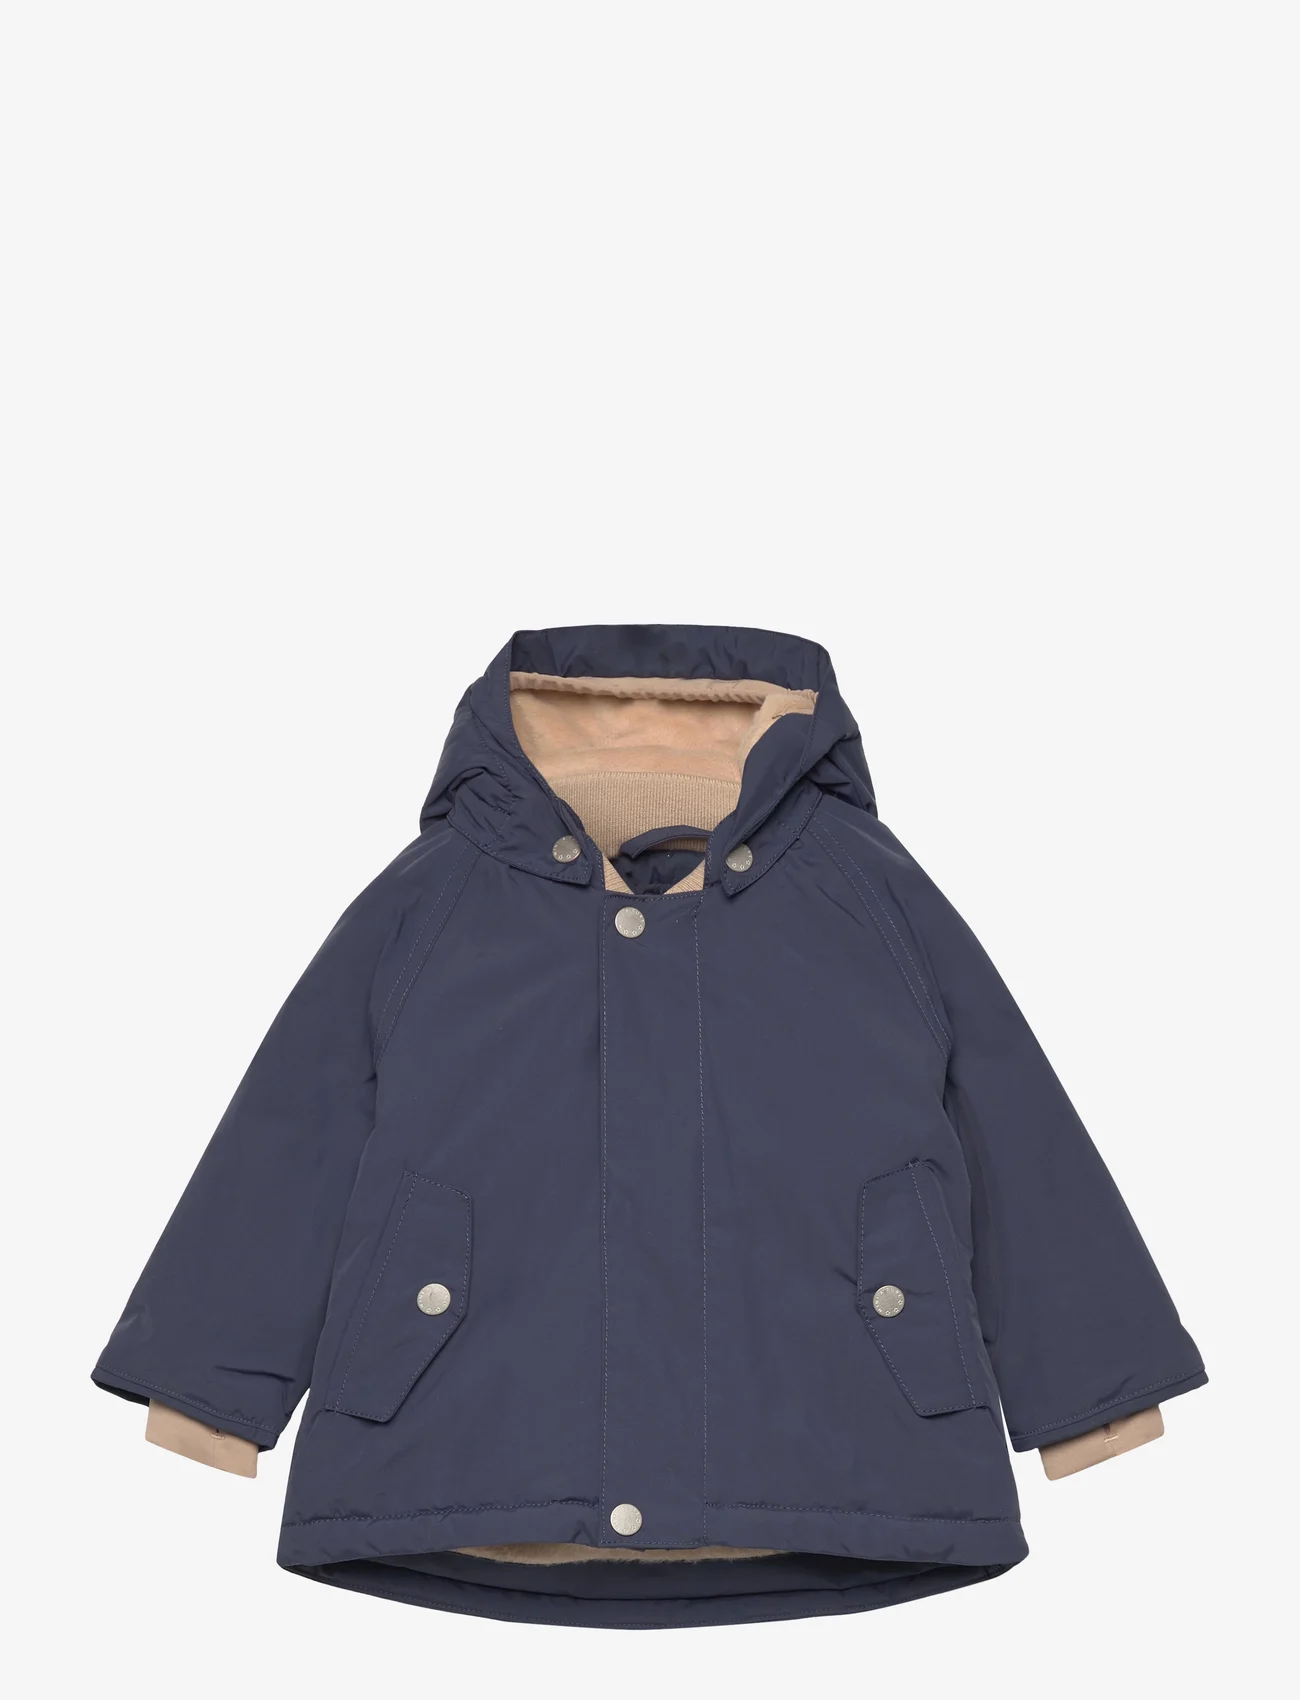 Mini A Ture - Wally fleece lined winter jacket. GRS - vinterjackor - blue nights - 0